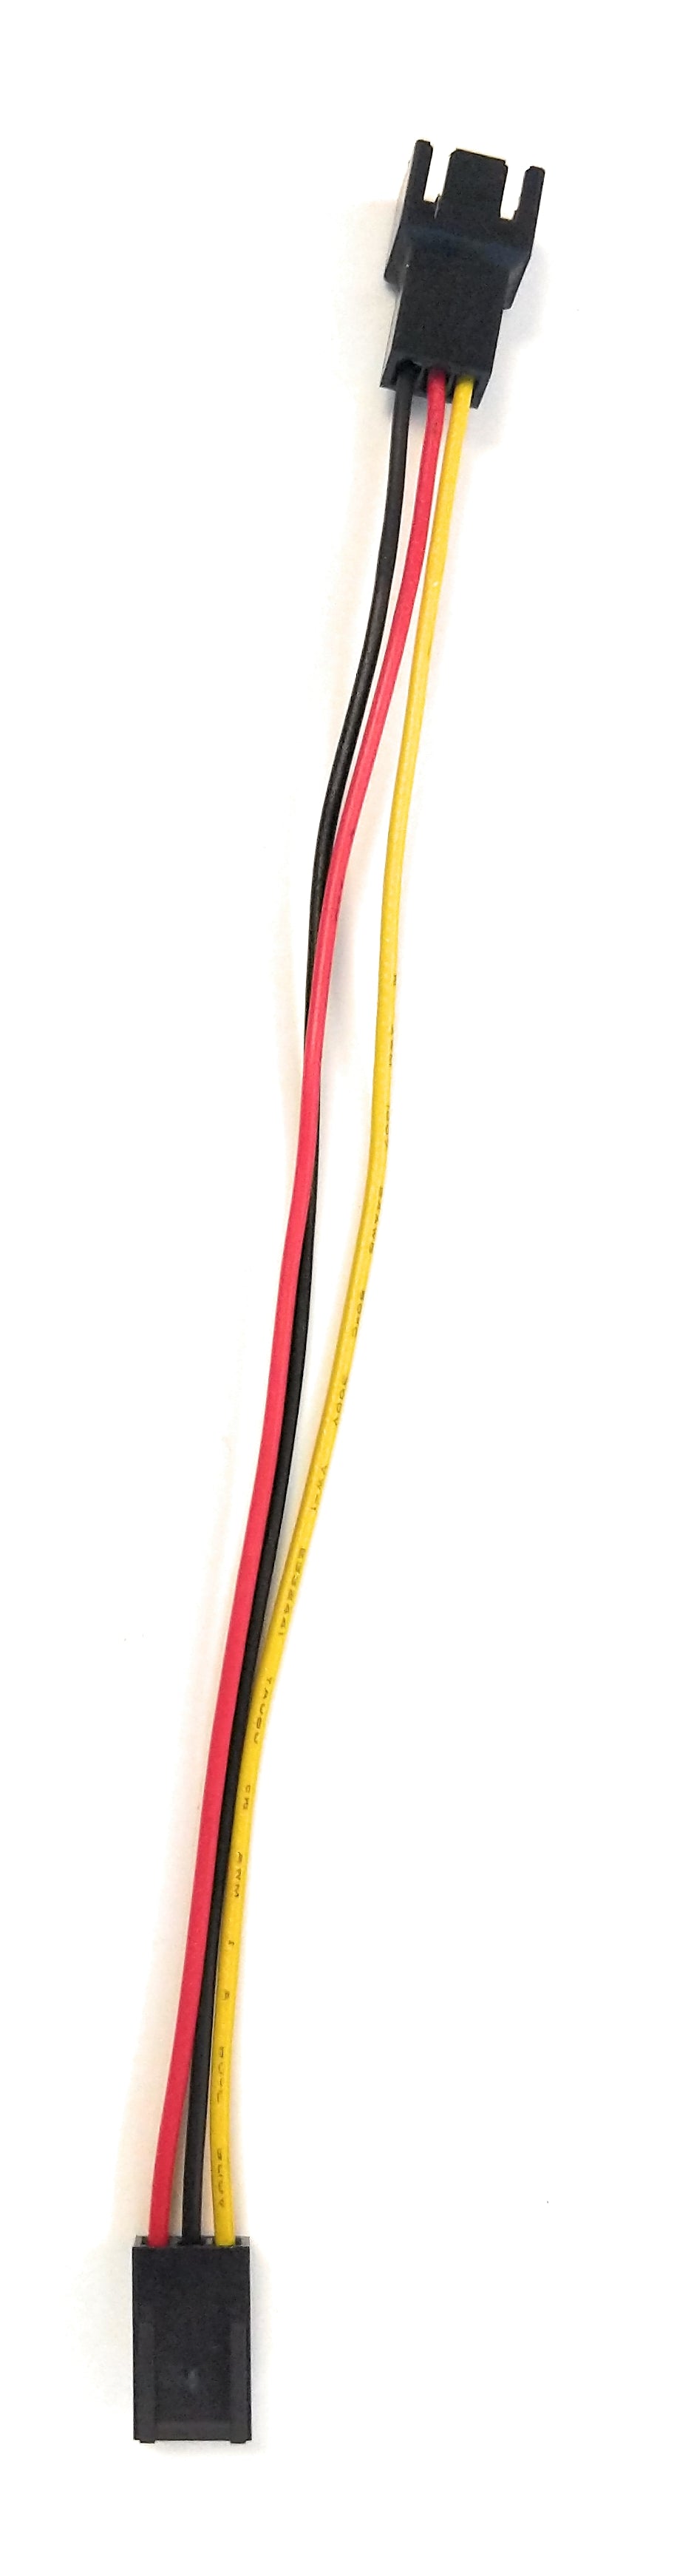 female 3 pin fan connector